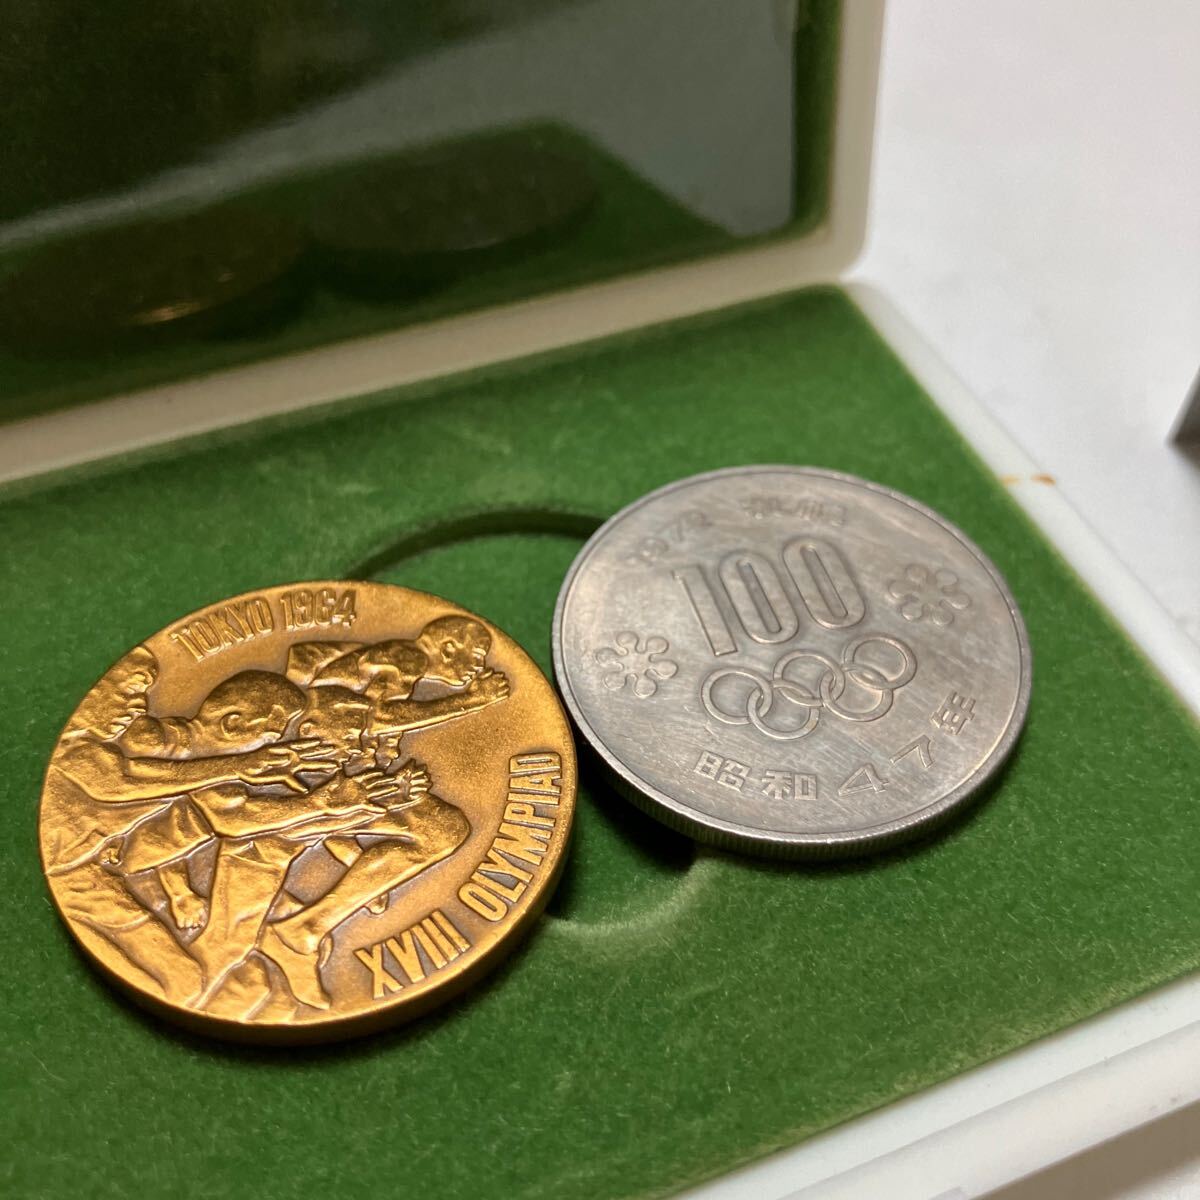 東京オリンピック 東京五輪 1964年 記念メダル 銅メダル 昭和 札幌オリンピック記念硬貨 セット まとめての画像1